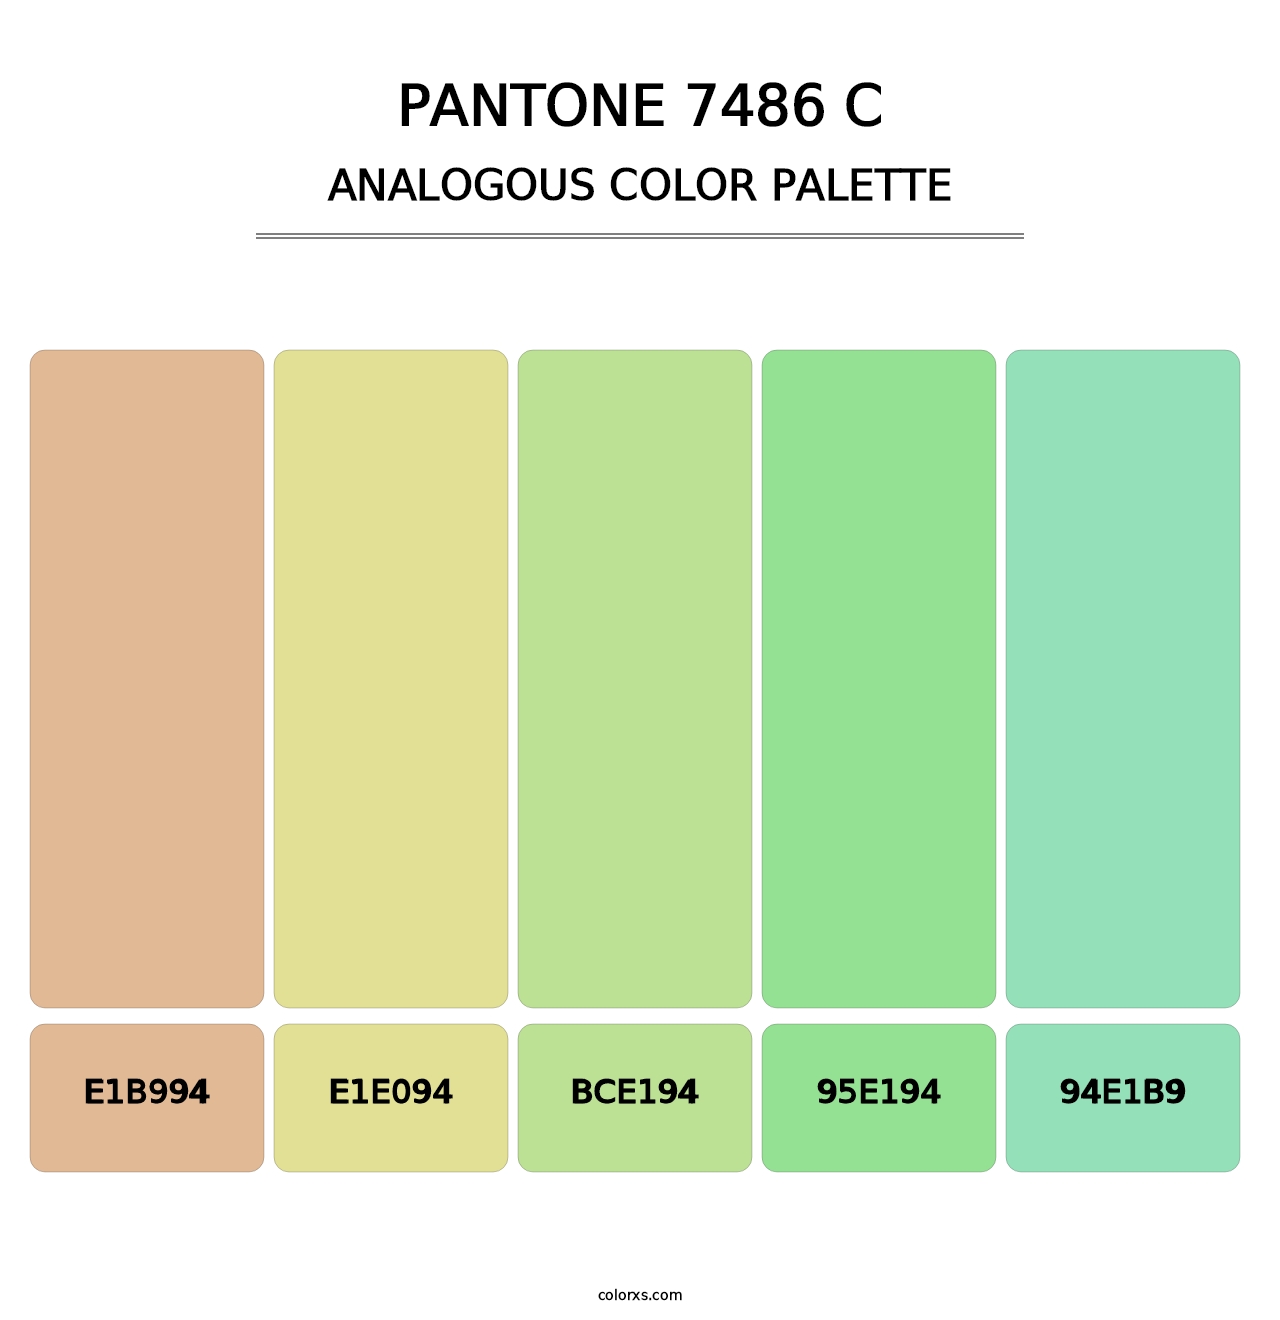 PANTONE 7486 C - Analogous Color Palette